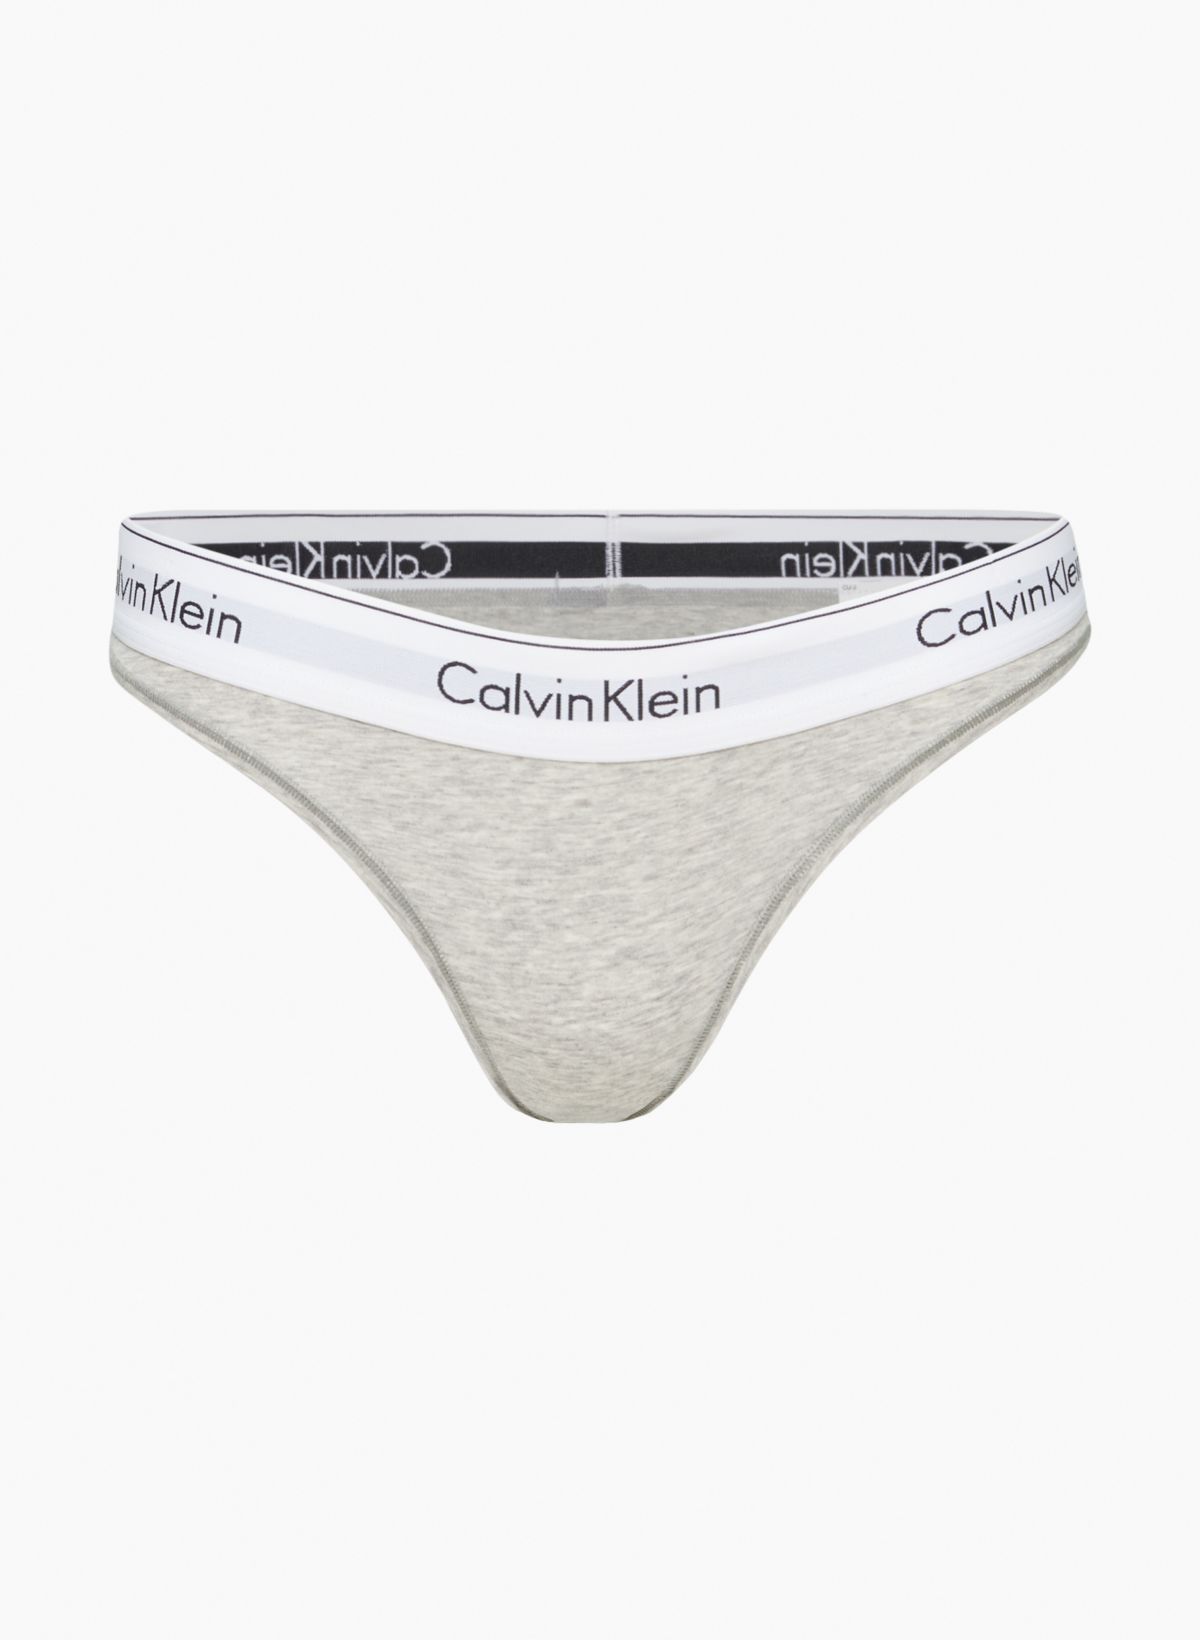 Calvin Klein Women's Modern Cotton Bikini, Black/Black Web, XS 